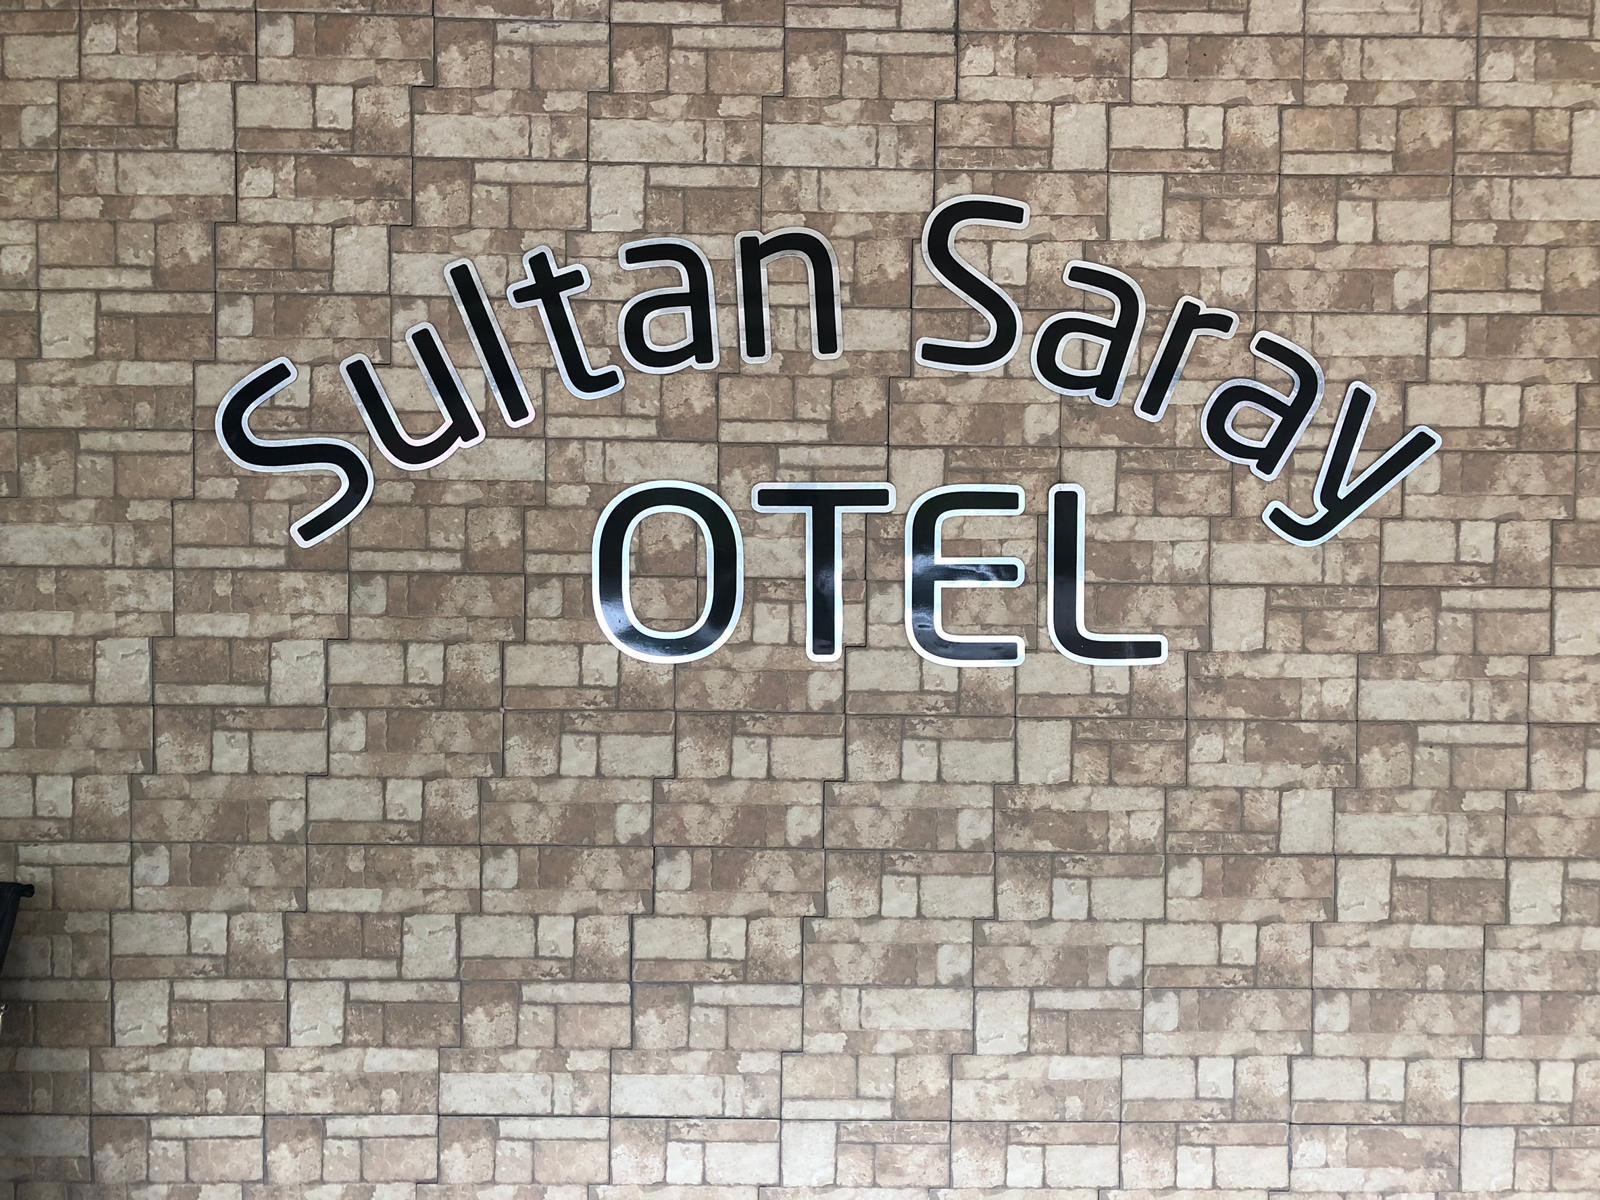 Sultan Saray Hotel